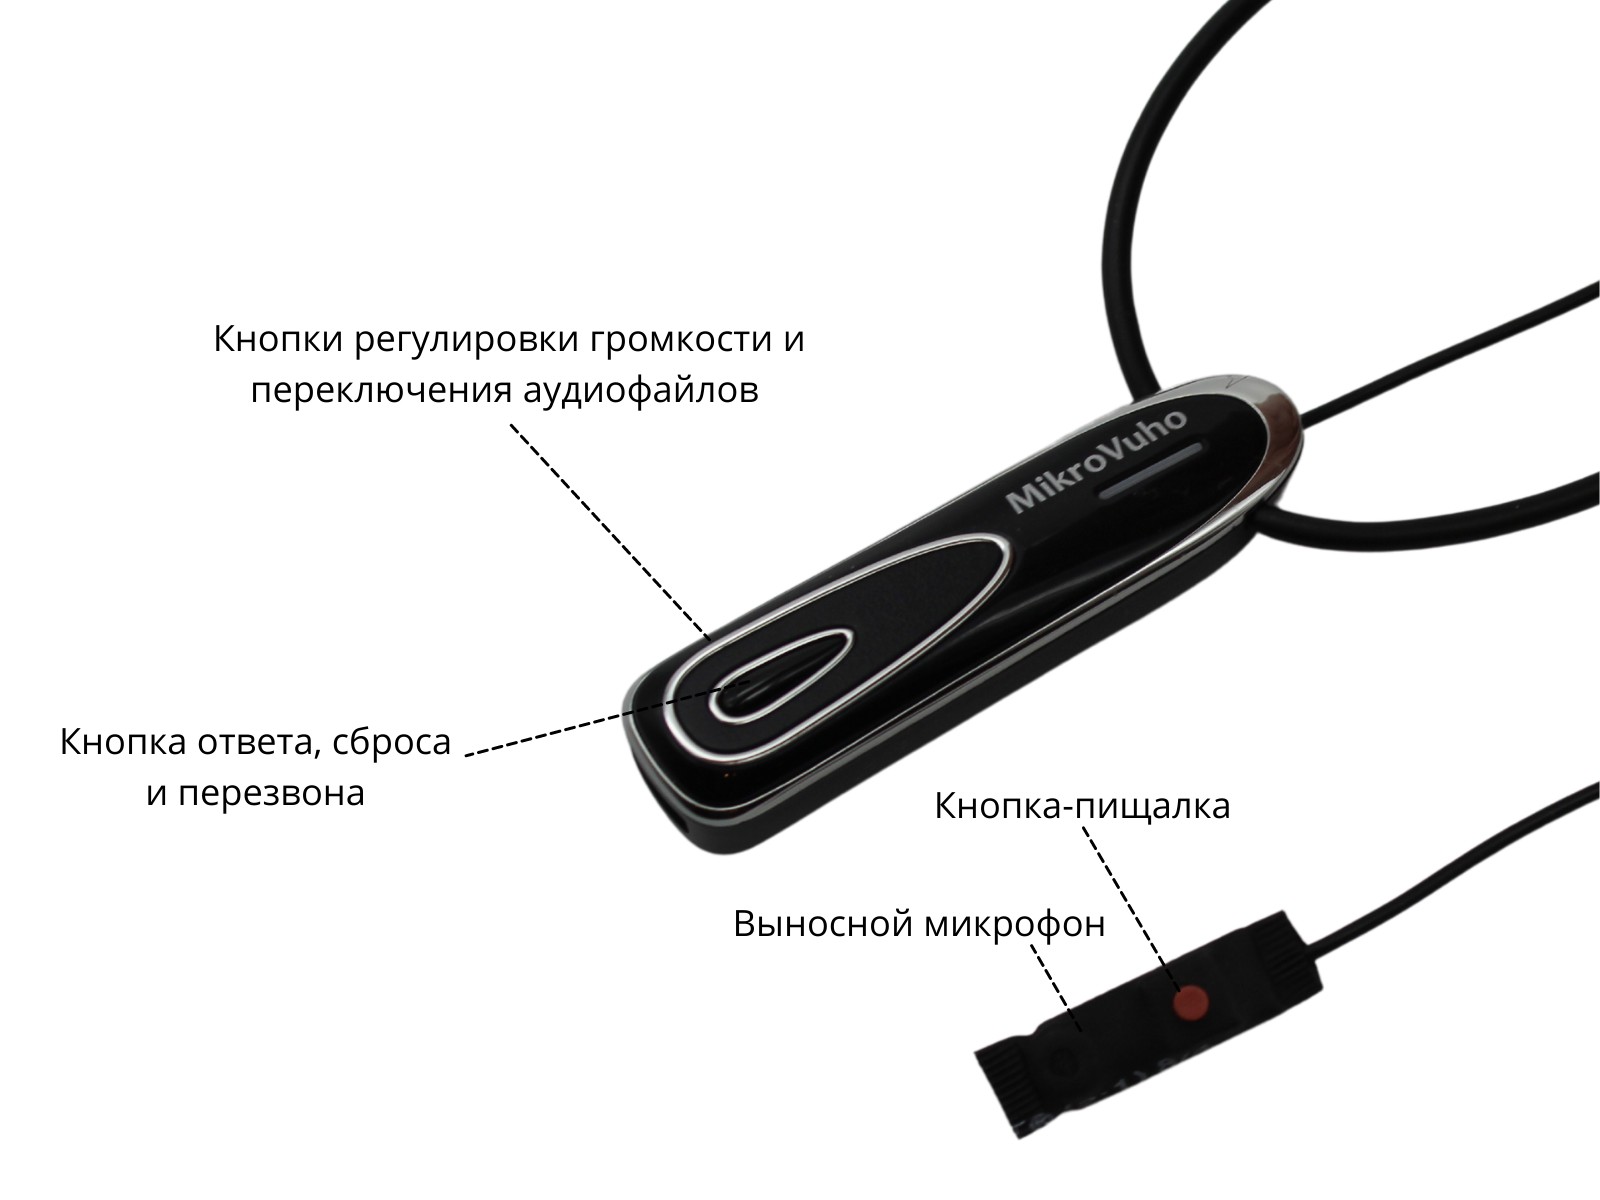 Универсальная гарнитура Bluetooth Premier с капсулой  Nano 4 мм и магнитами 2 мм 4